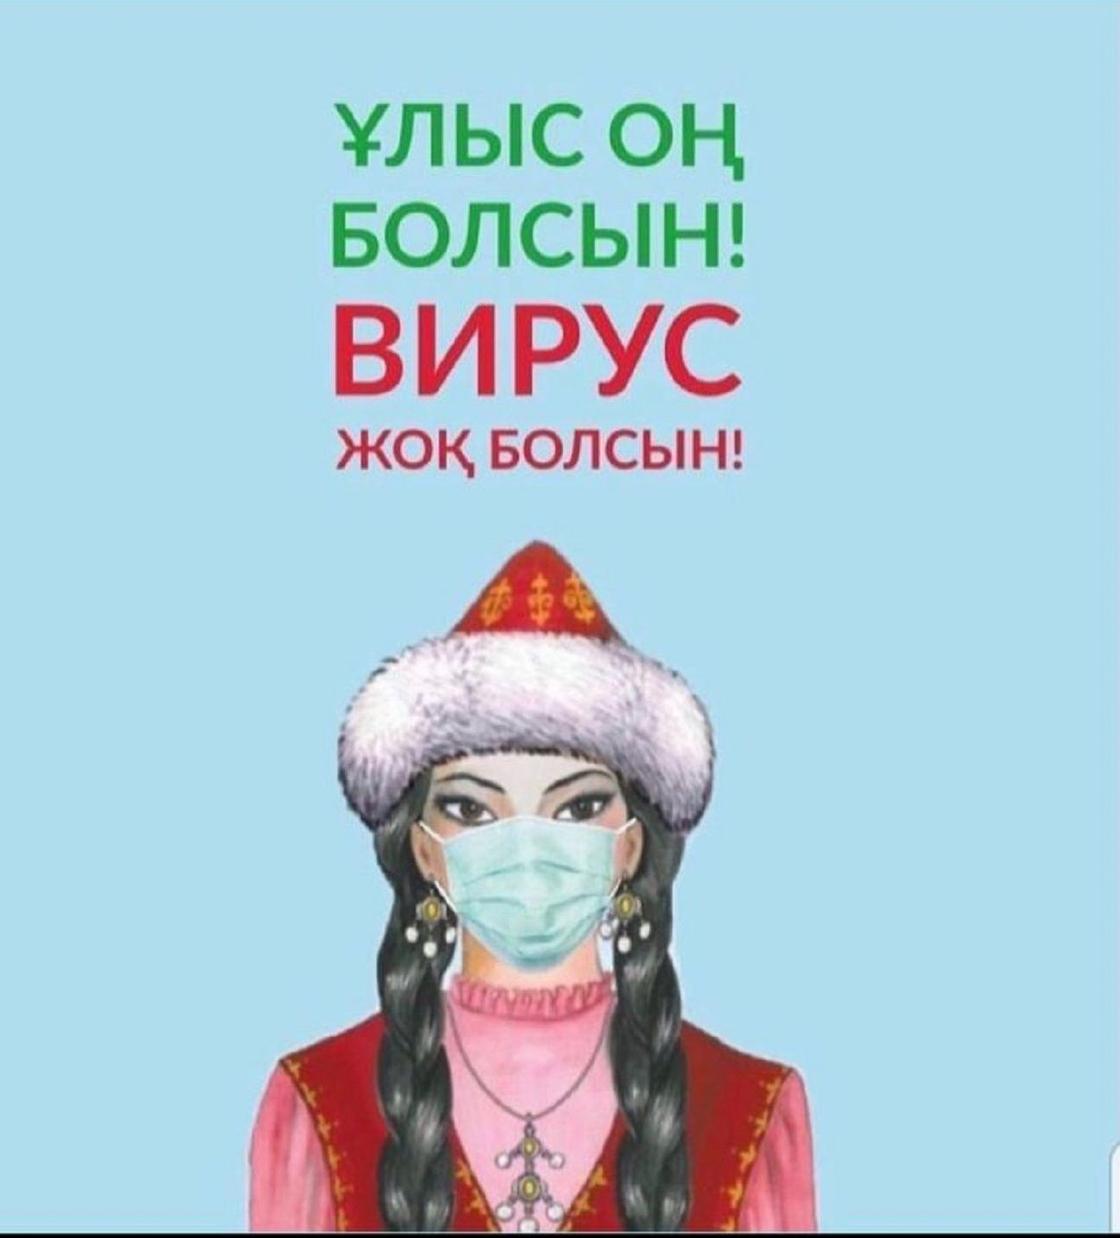 Рисунок девушки в национальной казахской одежде и в медмаске